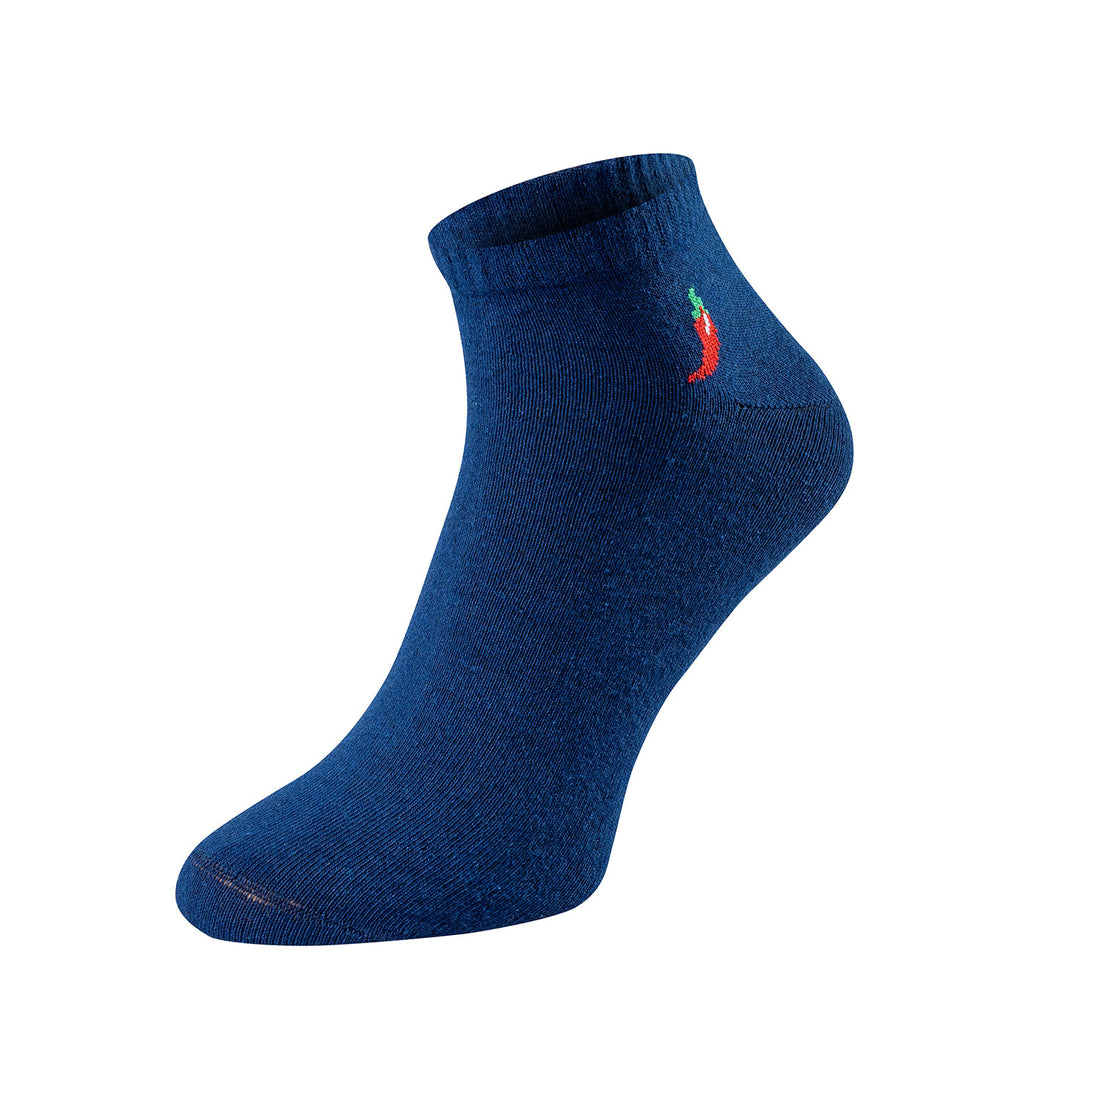 ChiliLifestyle Quarter Dark Socken, 3 Paar, für Damen und Herren